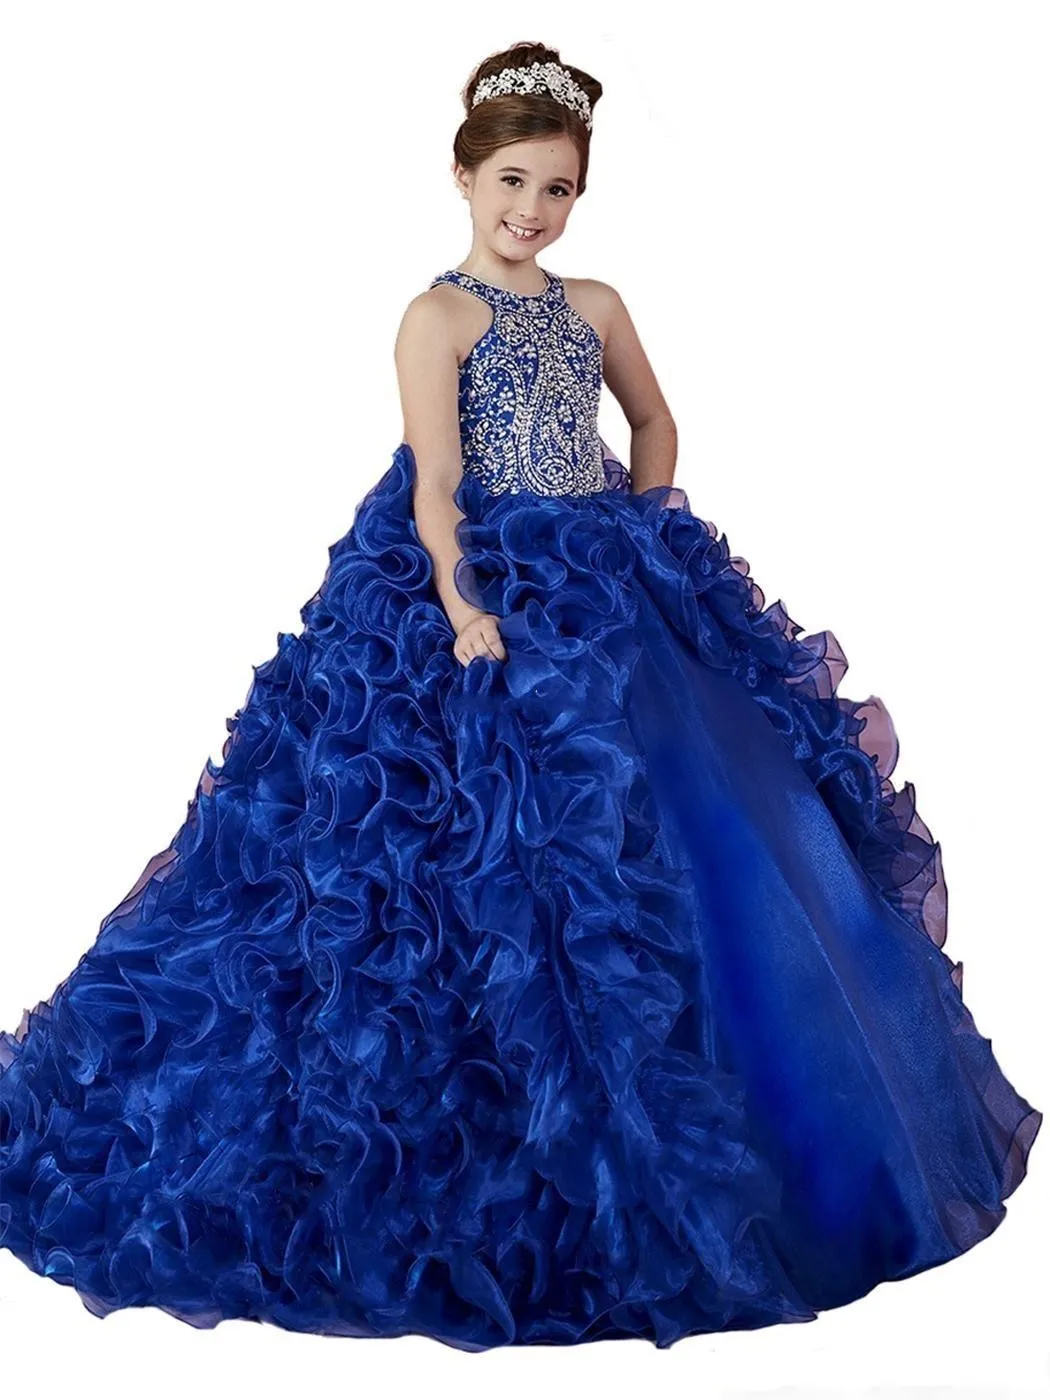 Lüks Kraliyet Mavi 2018 Kız Pageant Elbiseler Organze Ruffled Kristal Boncuk Prenses Baltalar Çocuklar Parti Düğün Çiçek Kız Elbise Için